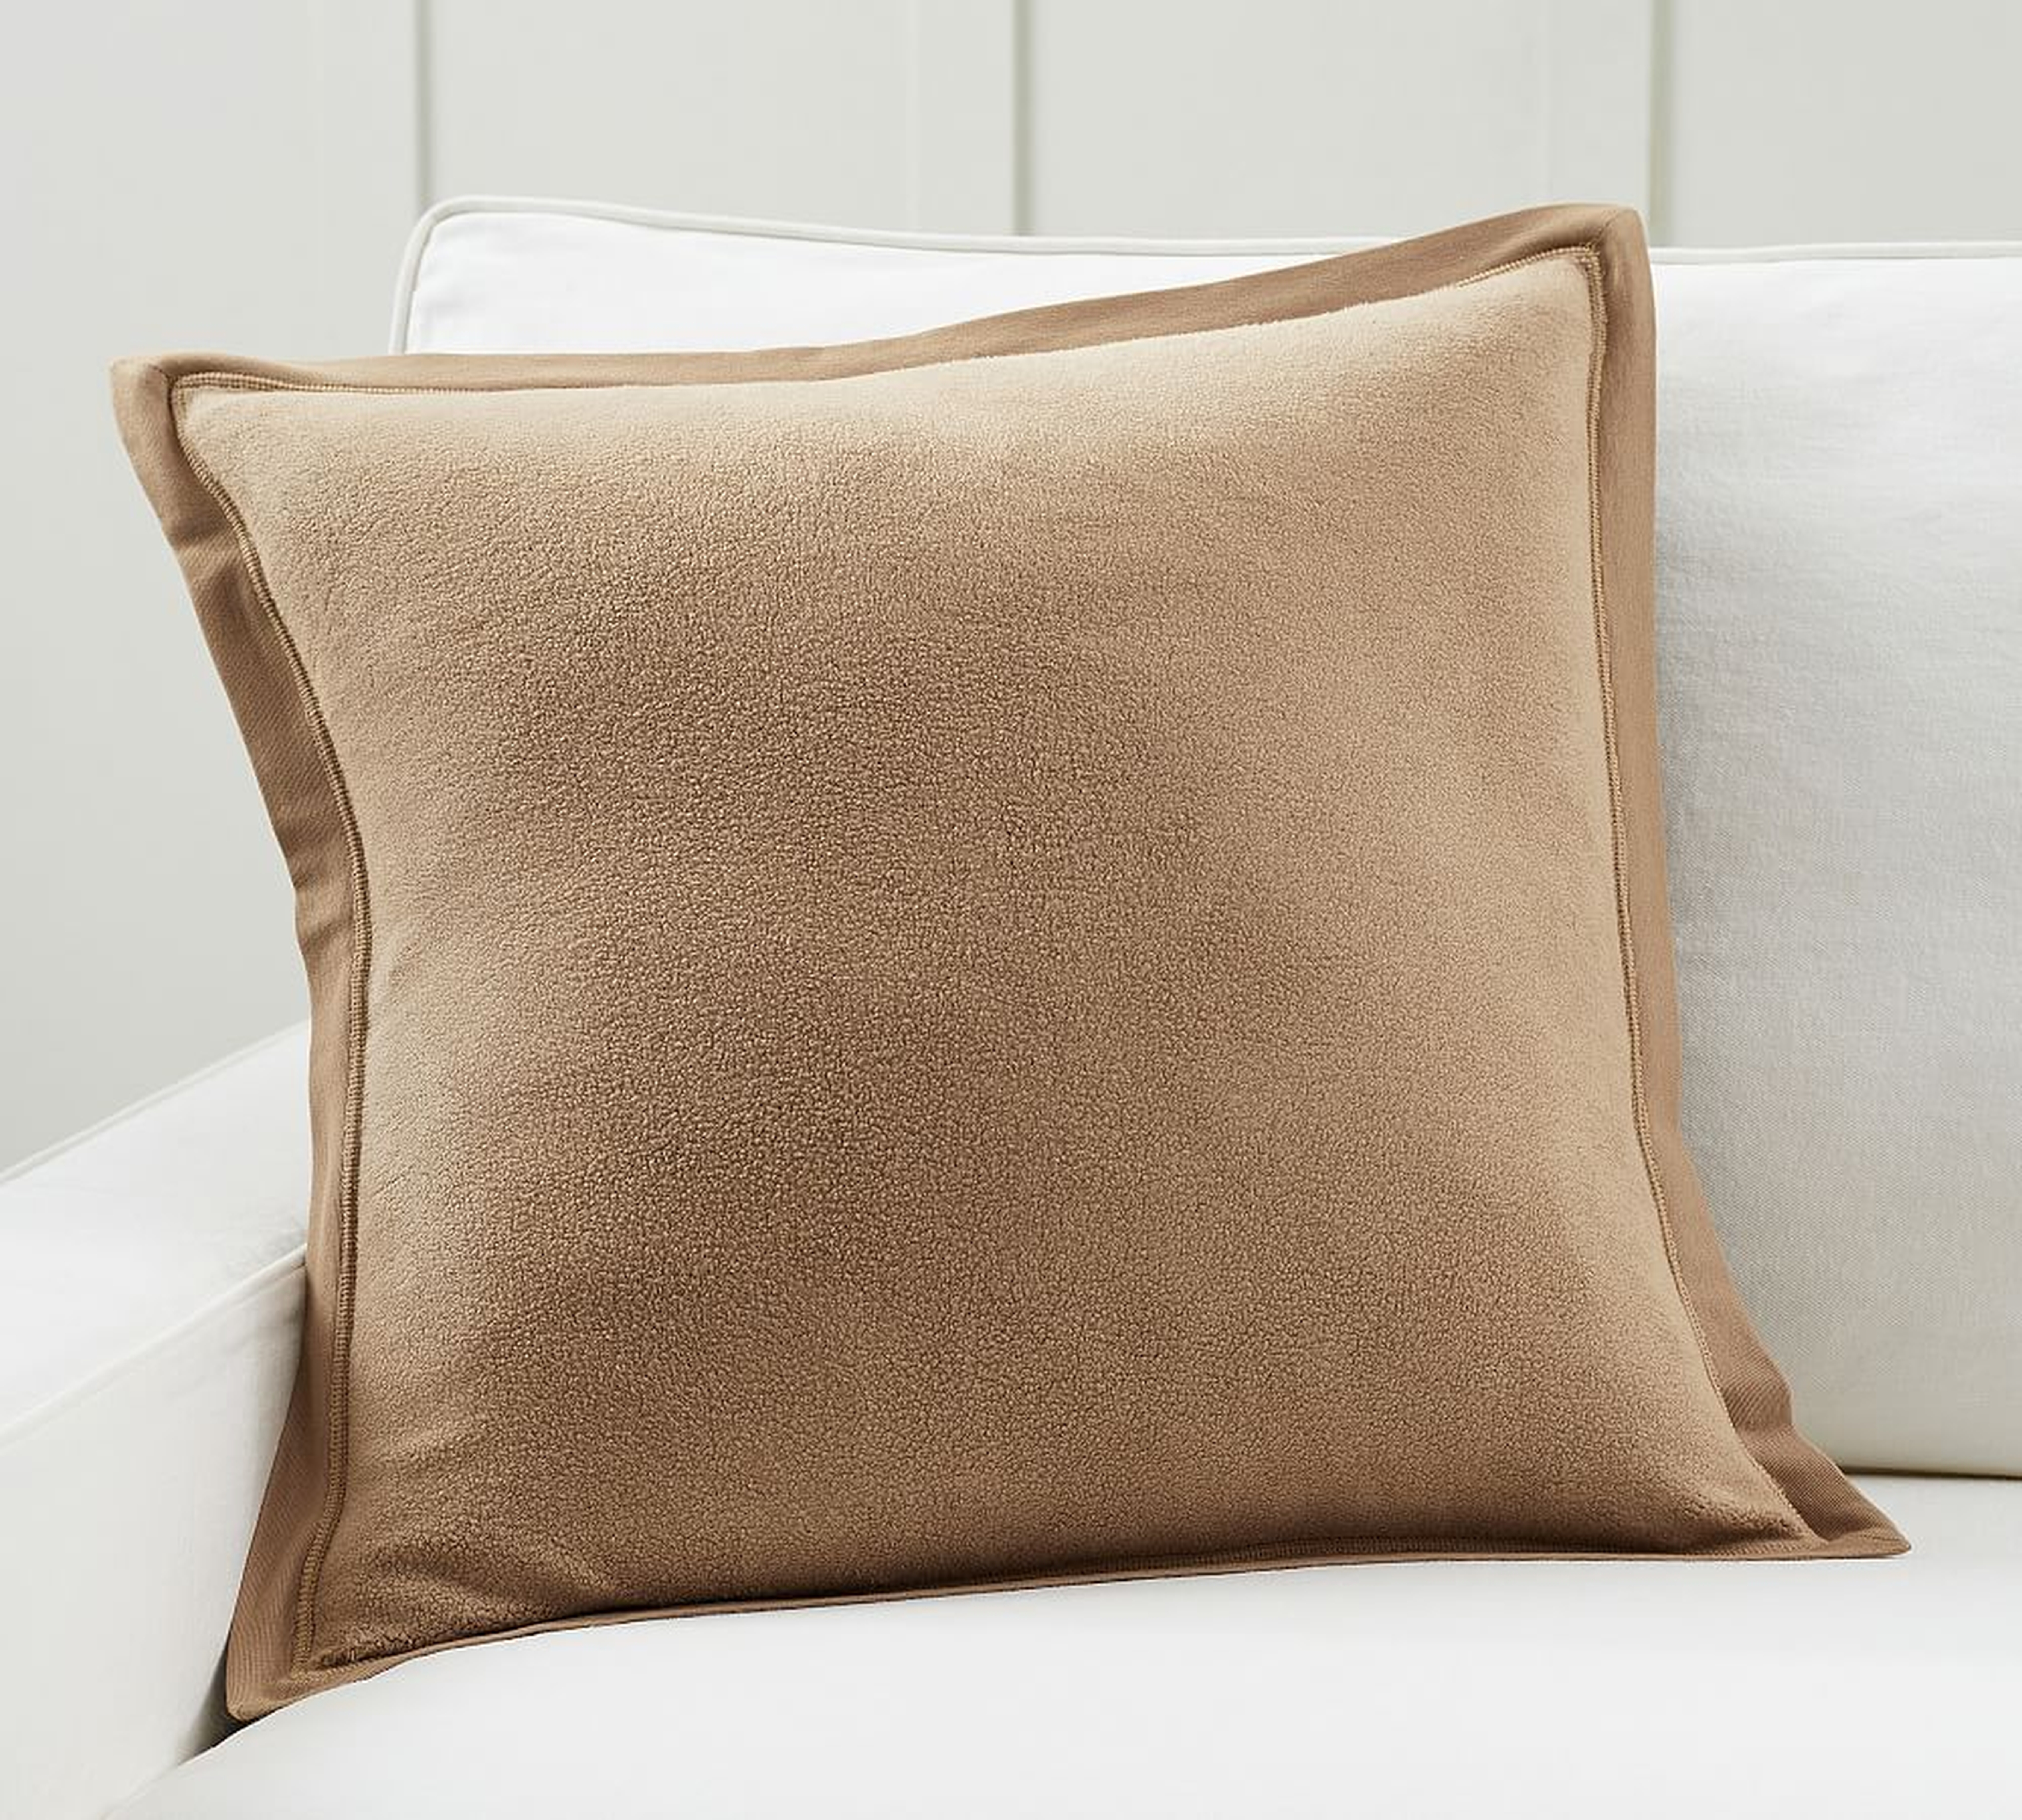 Cozy Fleece Pillow Cover, 22 x 22", Camel - Pottery Barn